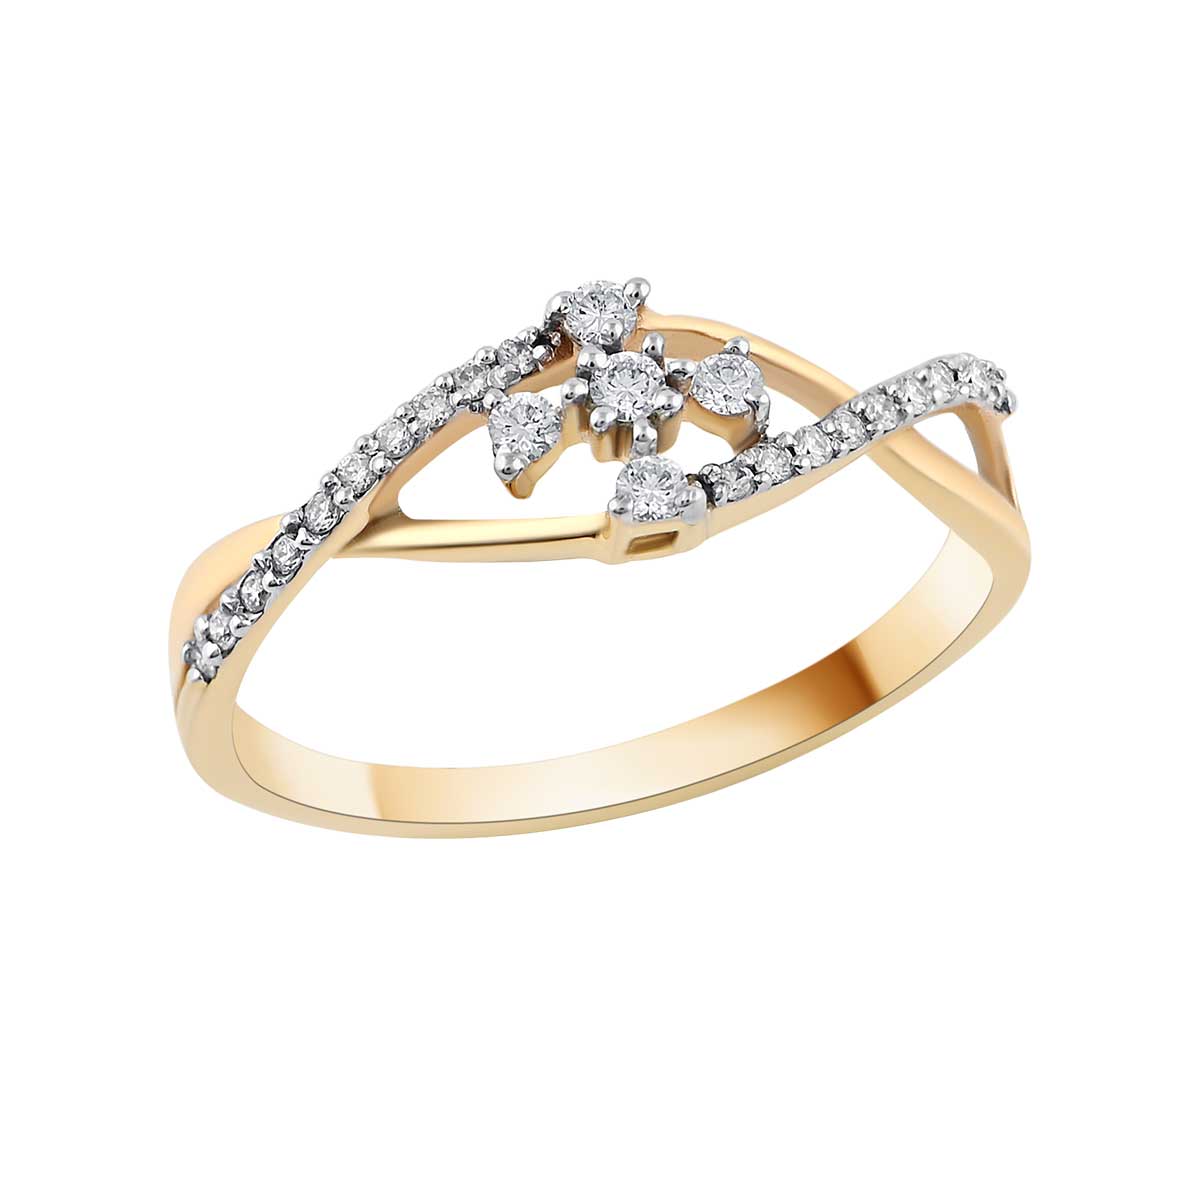 Purchase Diamond Engagement Rings Dubai, UAE | by Diamonds Dubai | Medium